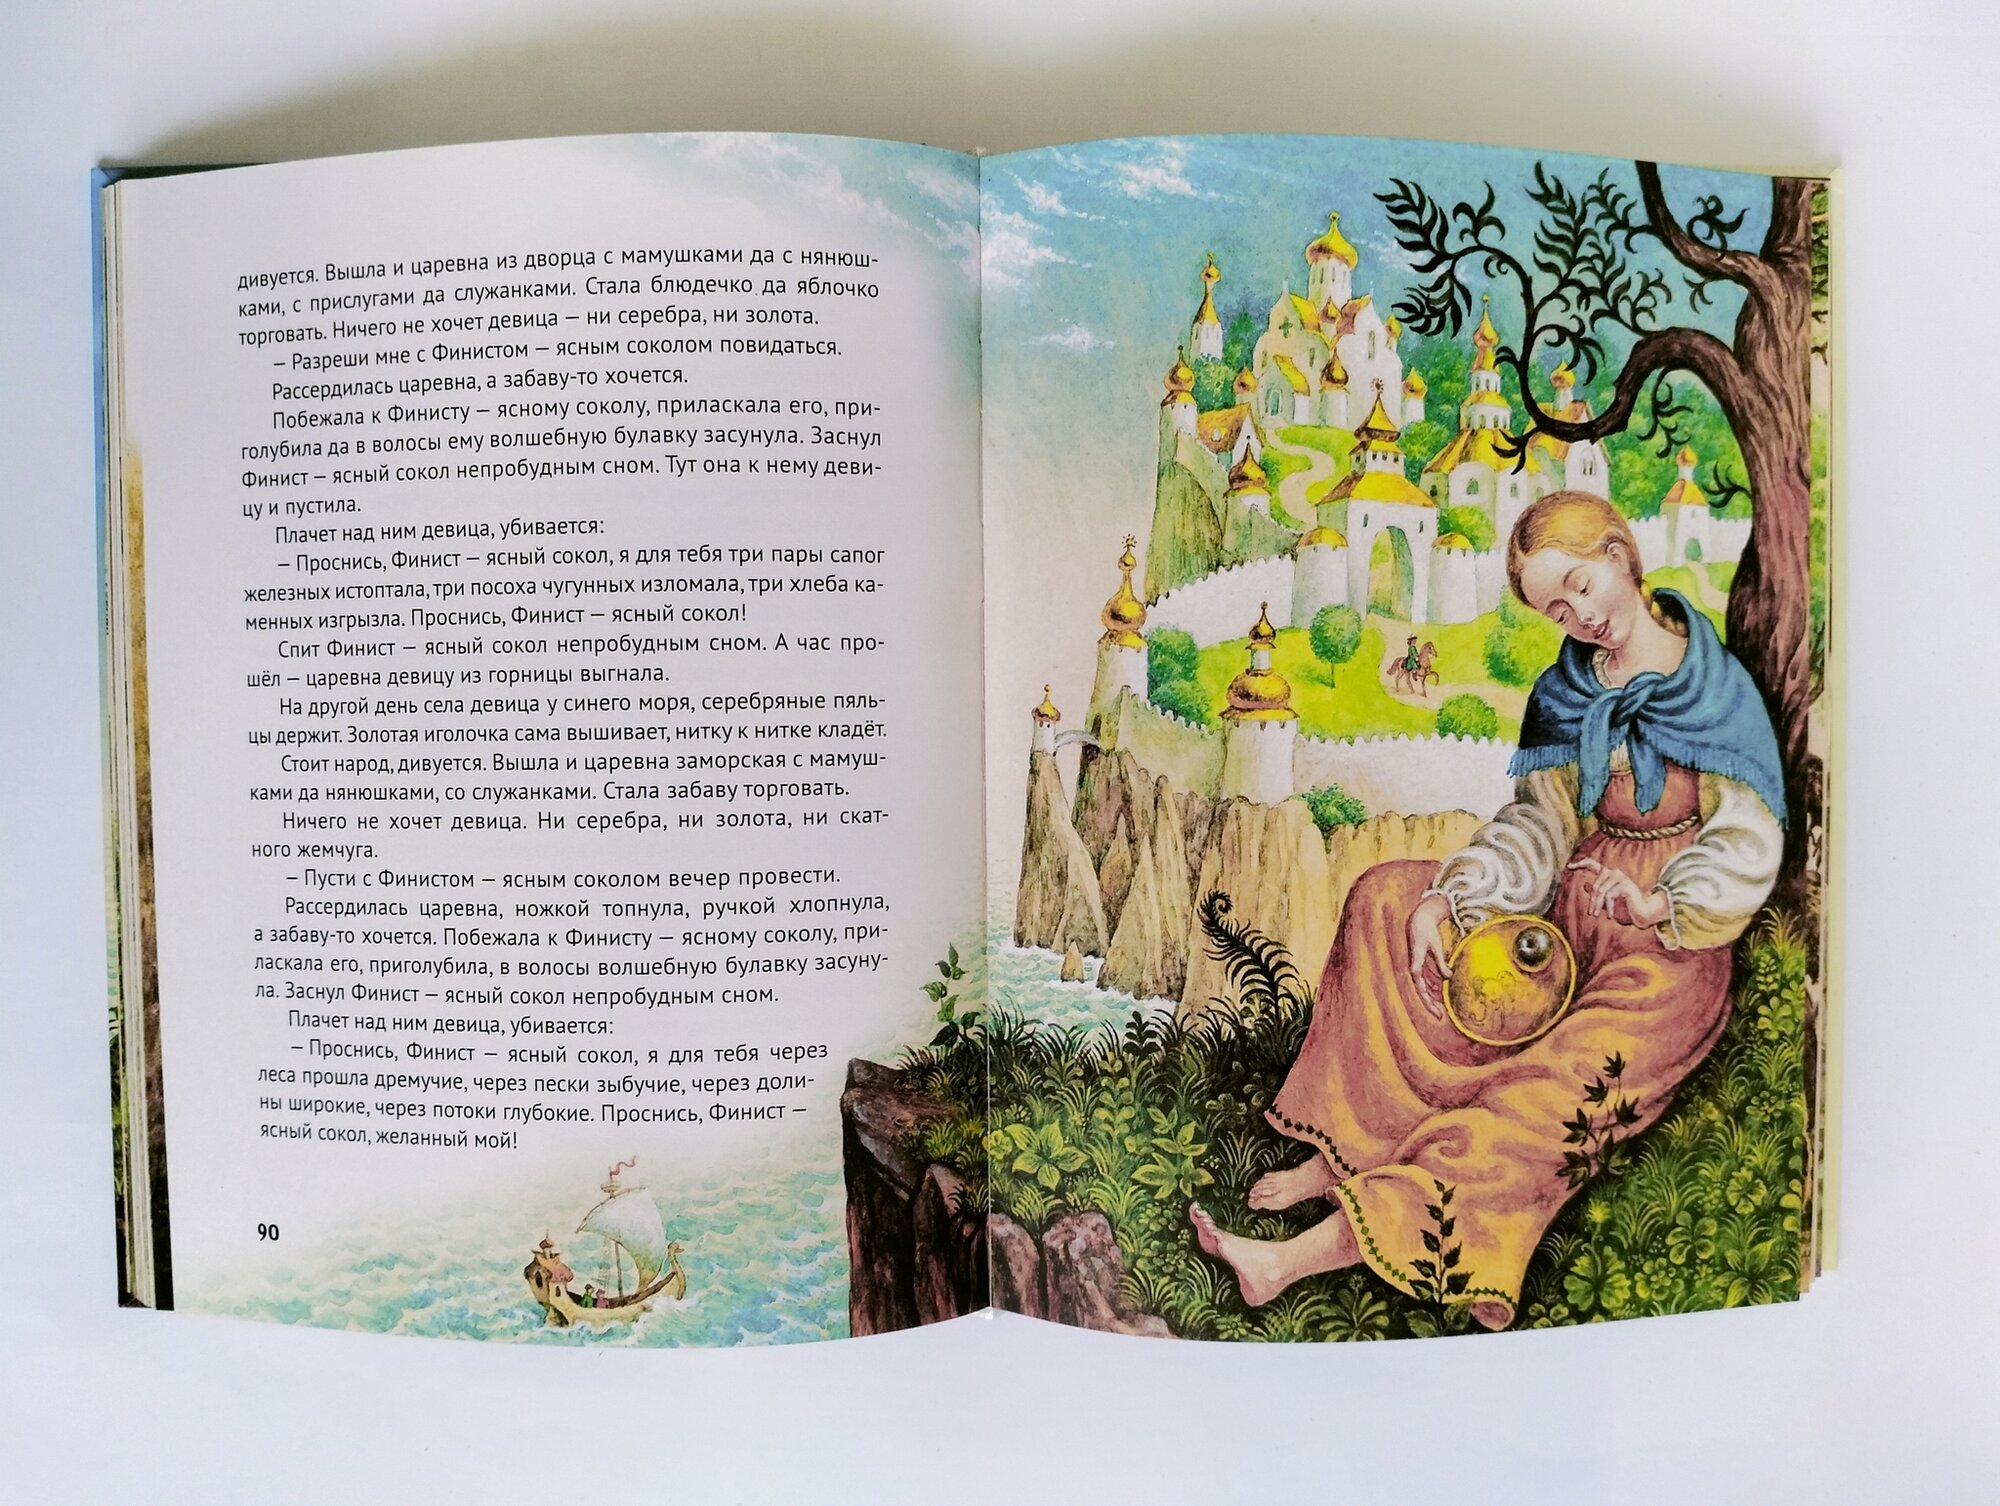 Золотая книга сказок (Гримм Якоб и Вильгельм, Д'Онуа Мадам) - фото №6